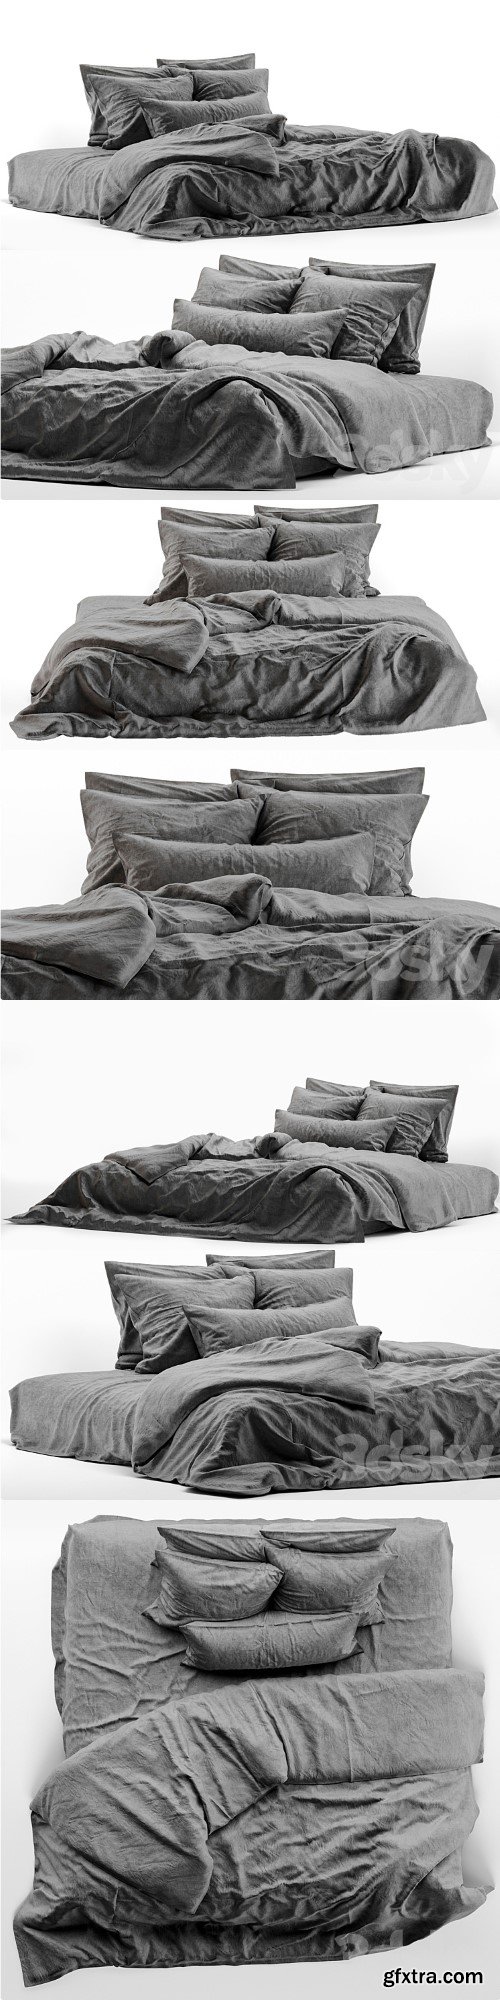 linen bedding 4